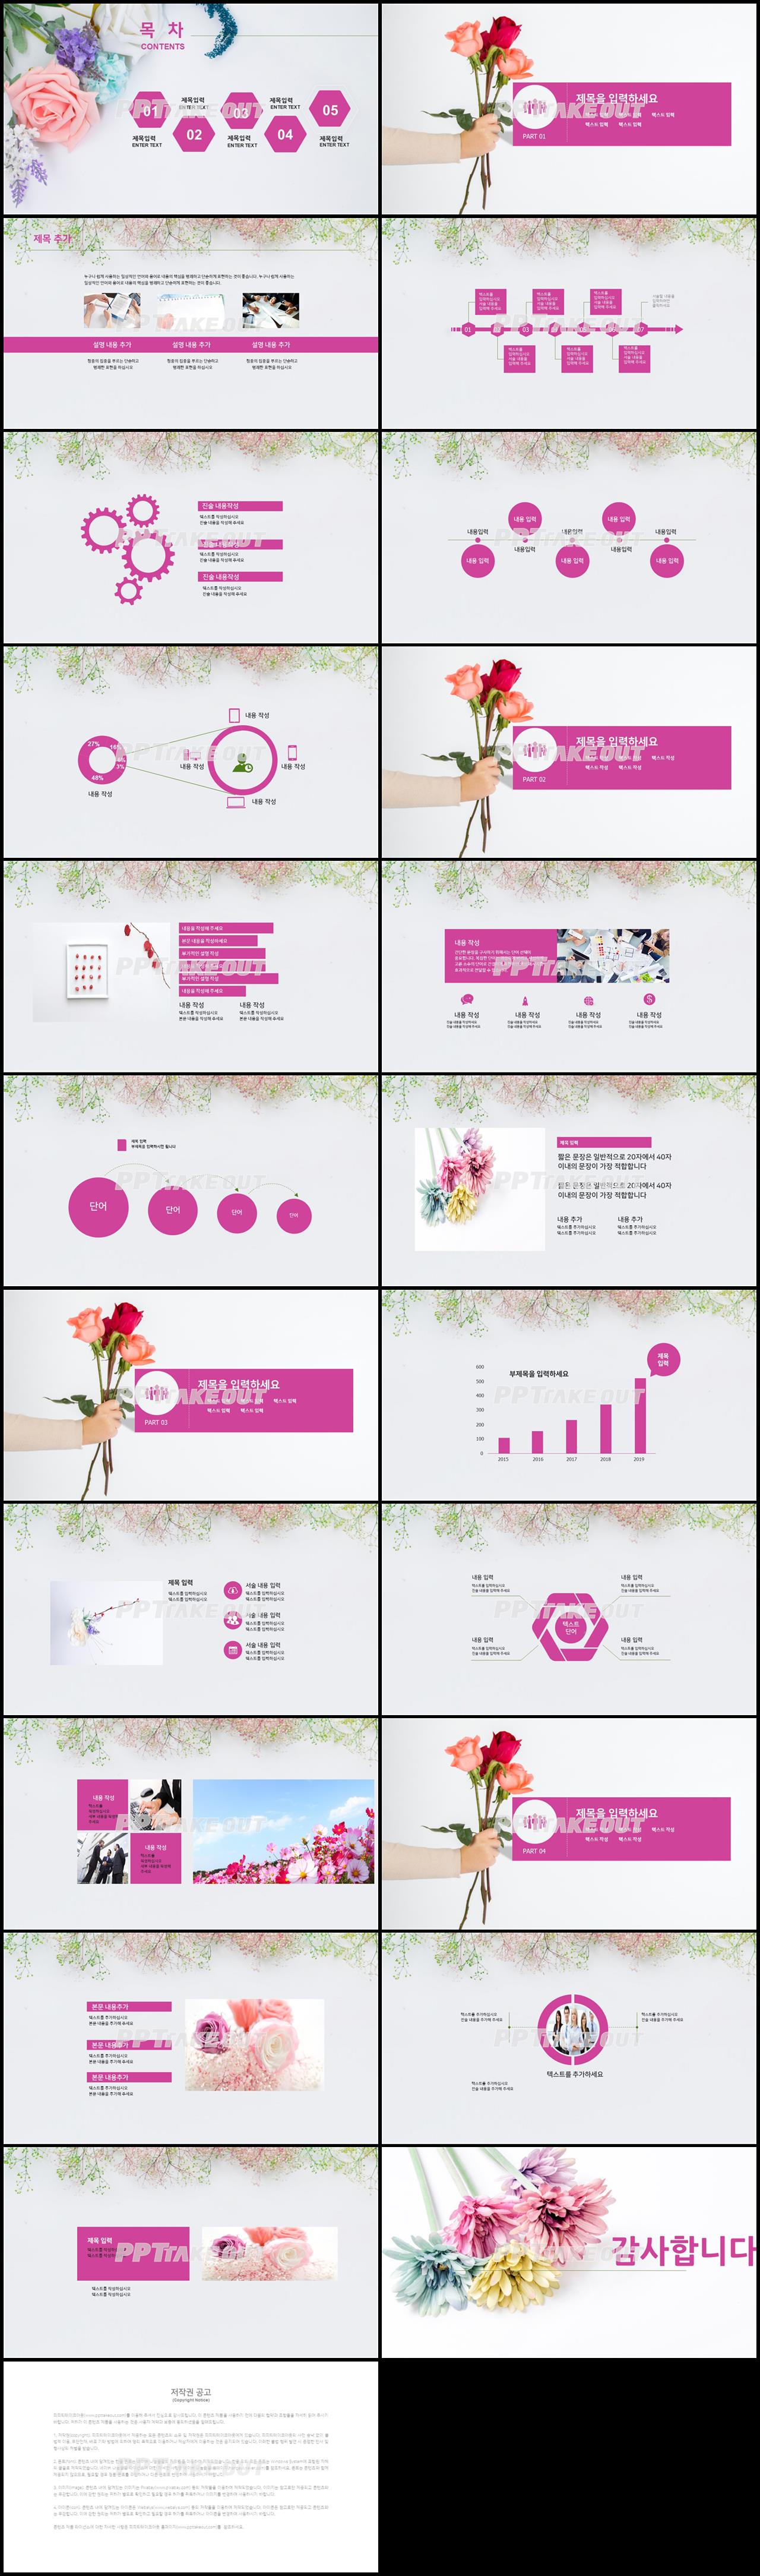 꽃과 동식물 주제 빨강색 귀여운 발표용 PPT탬플릿 다운 상세보기